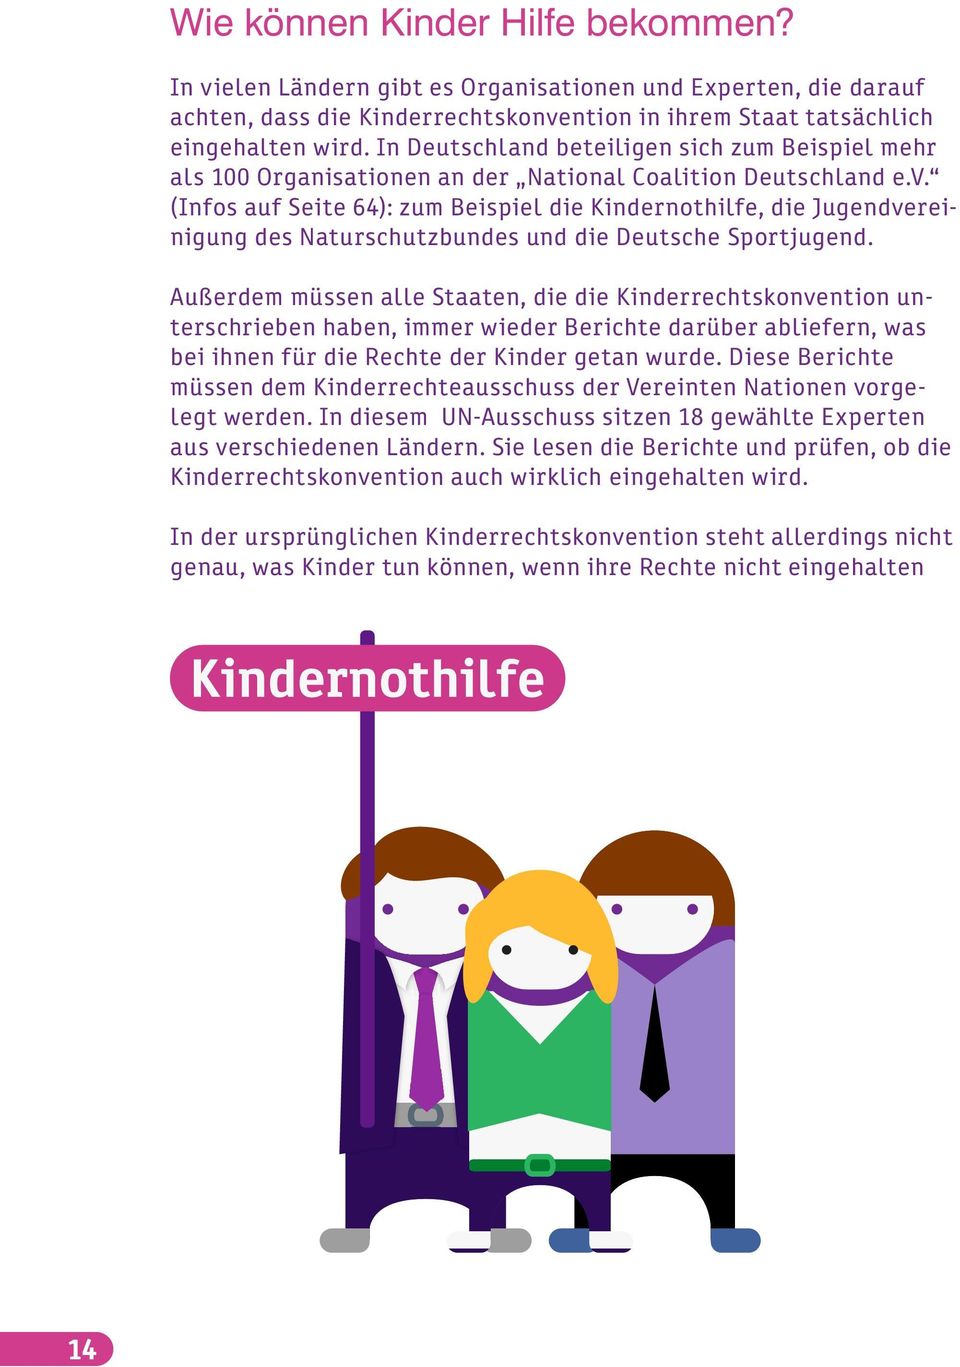 (Infos auf Seite 64): zum Beispiel die Kindernothilfe, die Jugendvereinigung des Naturschutzbundes und die Deutsche Sportjugend.